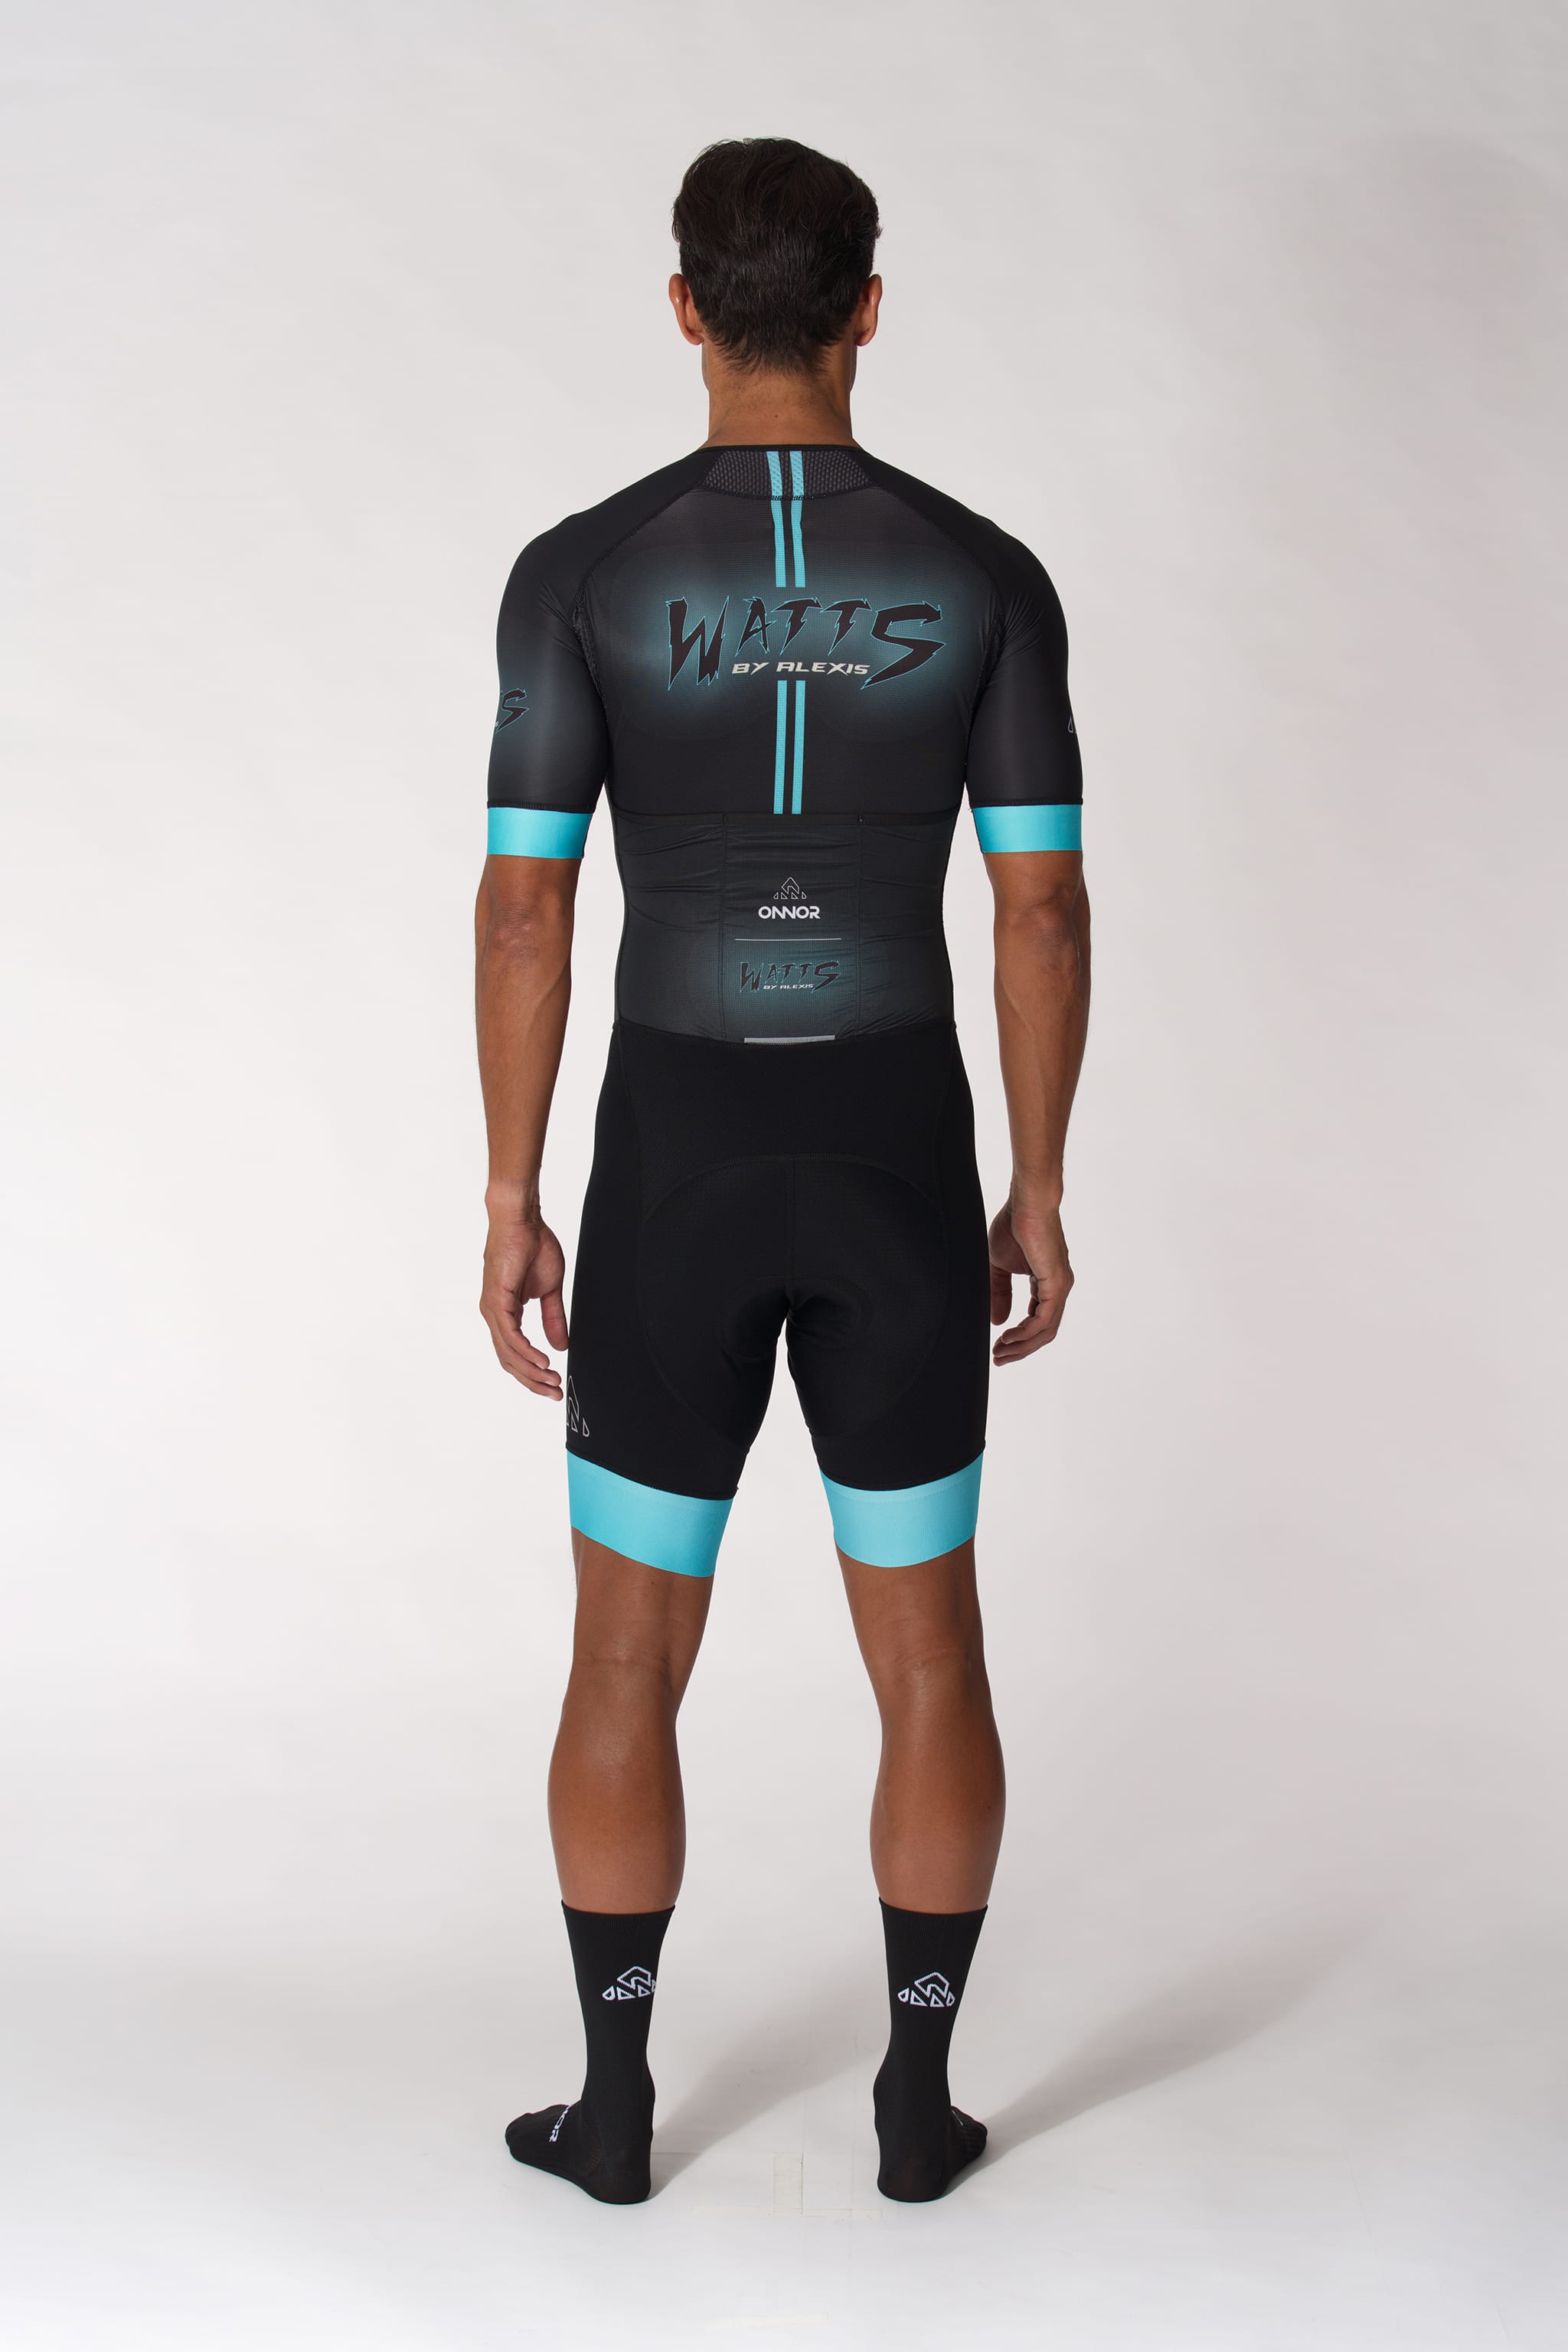 Cycling Triathlon Custom Apparel | ONNOR SPORT